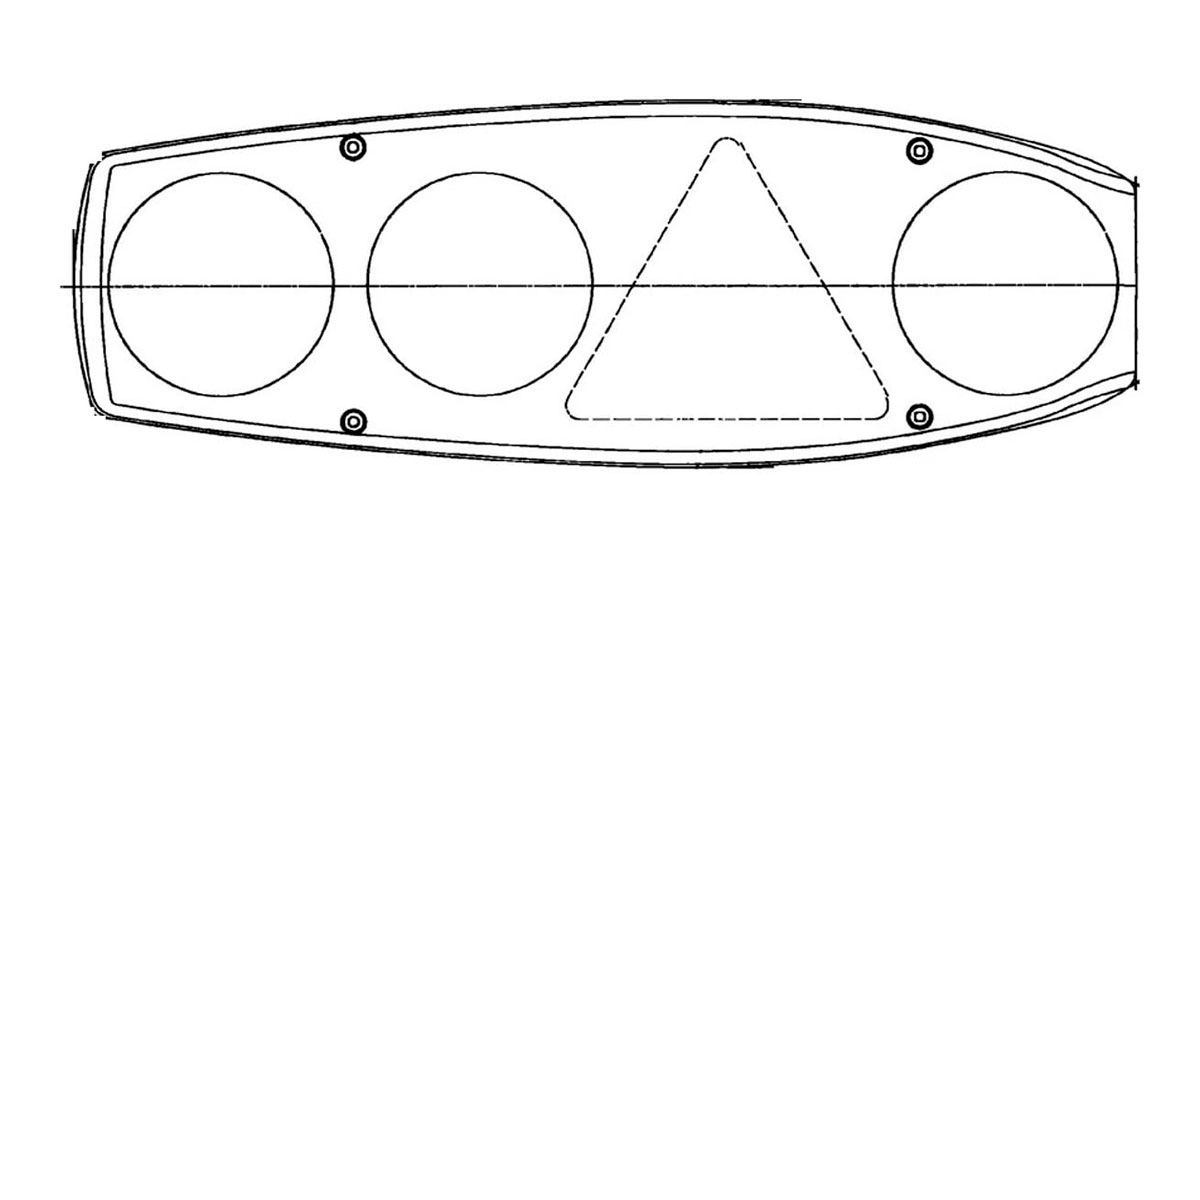 Rücklicht, Caraluna II, rechts, Wohnwagen, Dreieck, Nebel